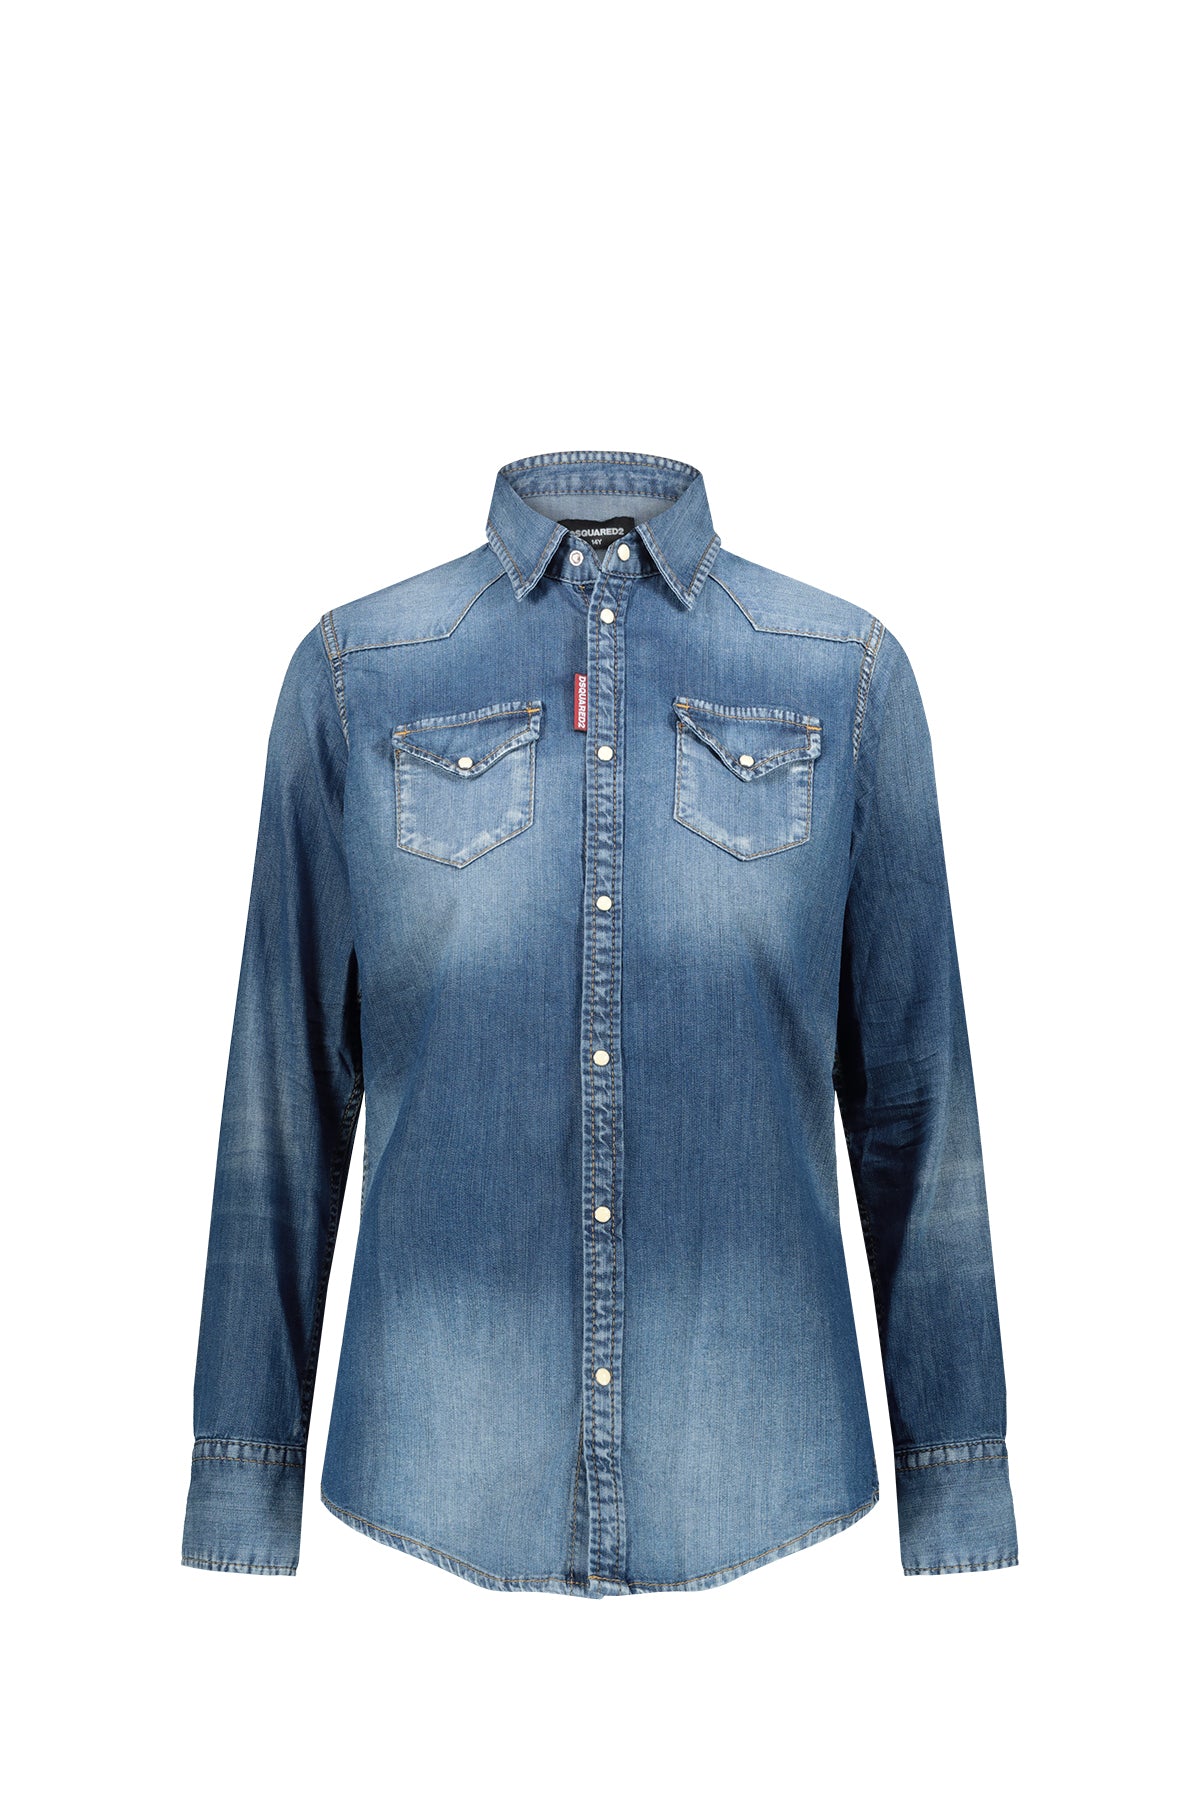 DSQUARED2 Camicia Jeans Con Colletto Denim DENIM